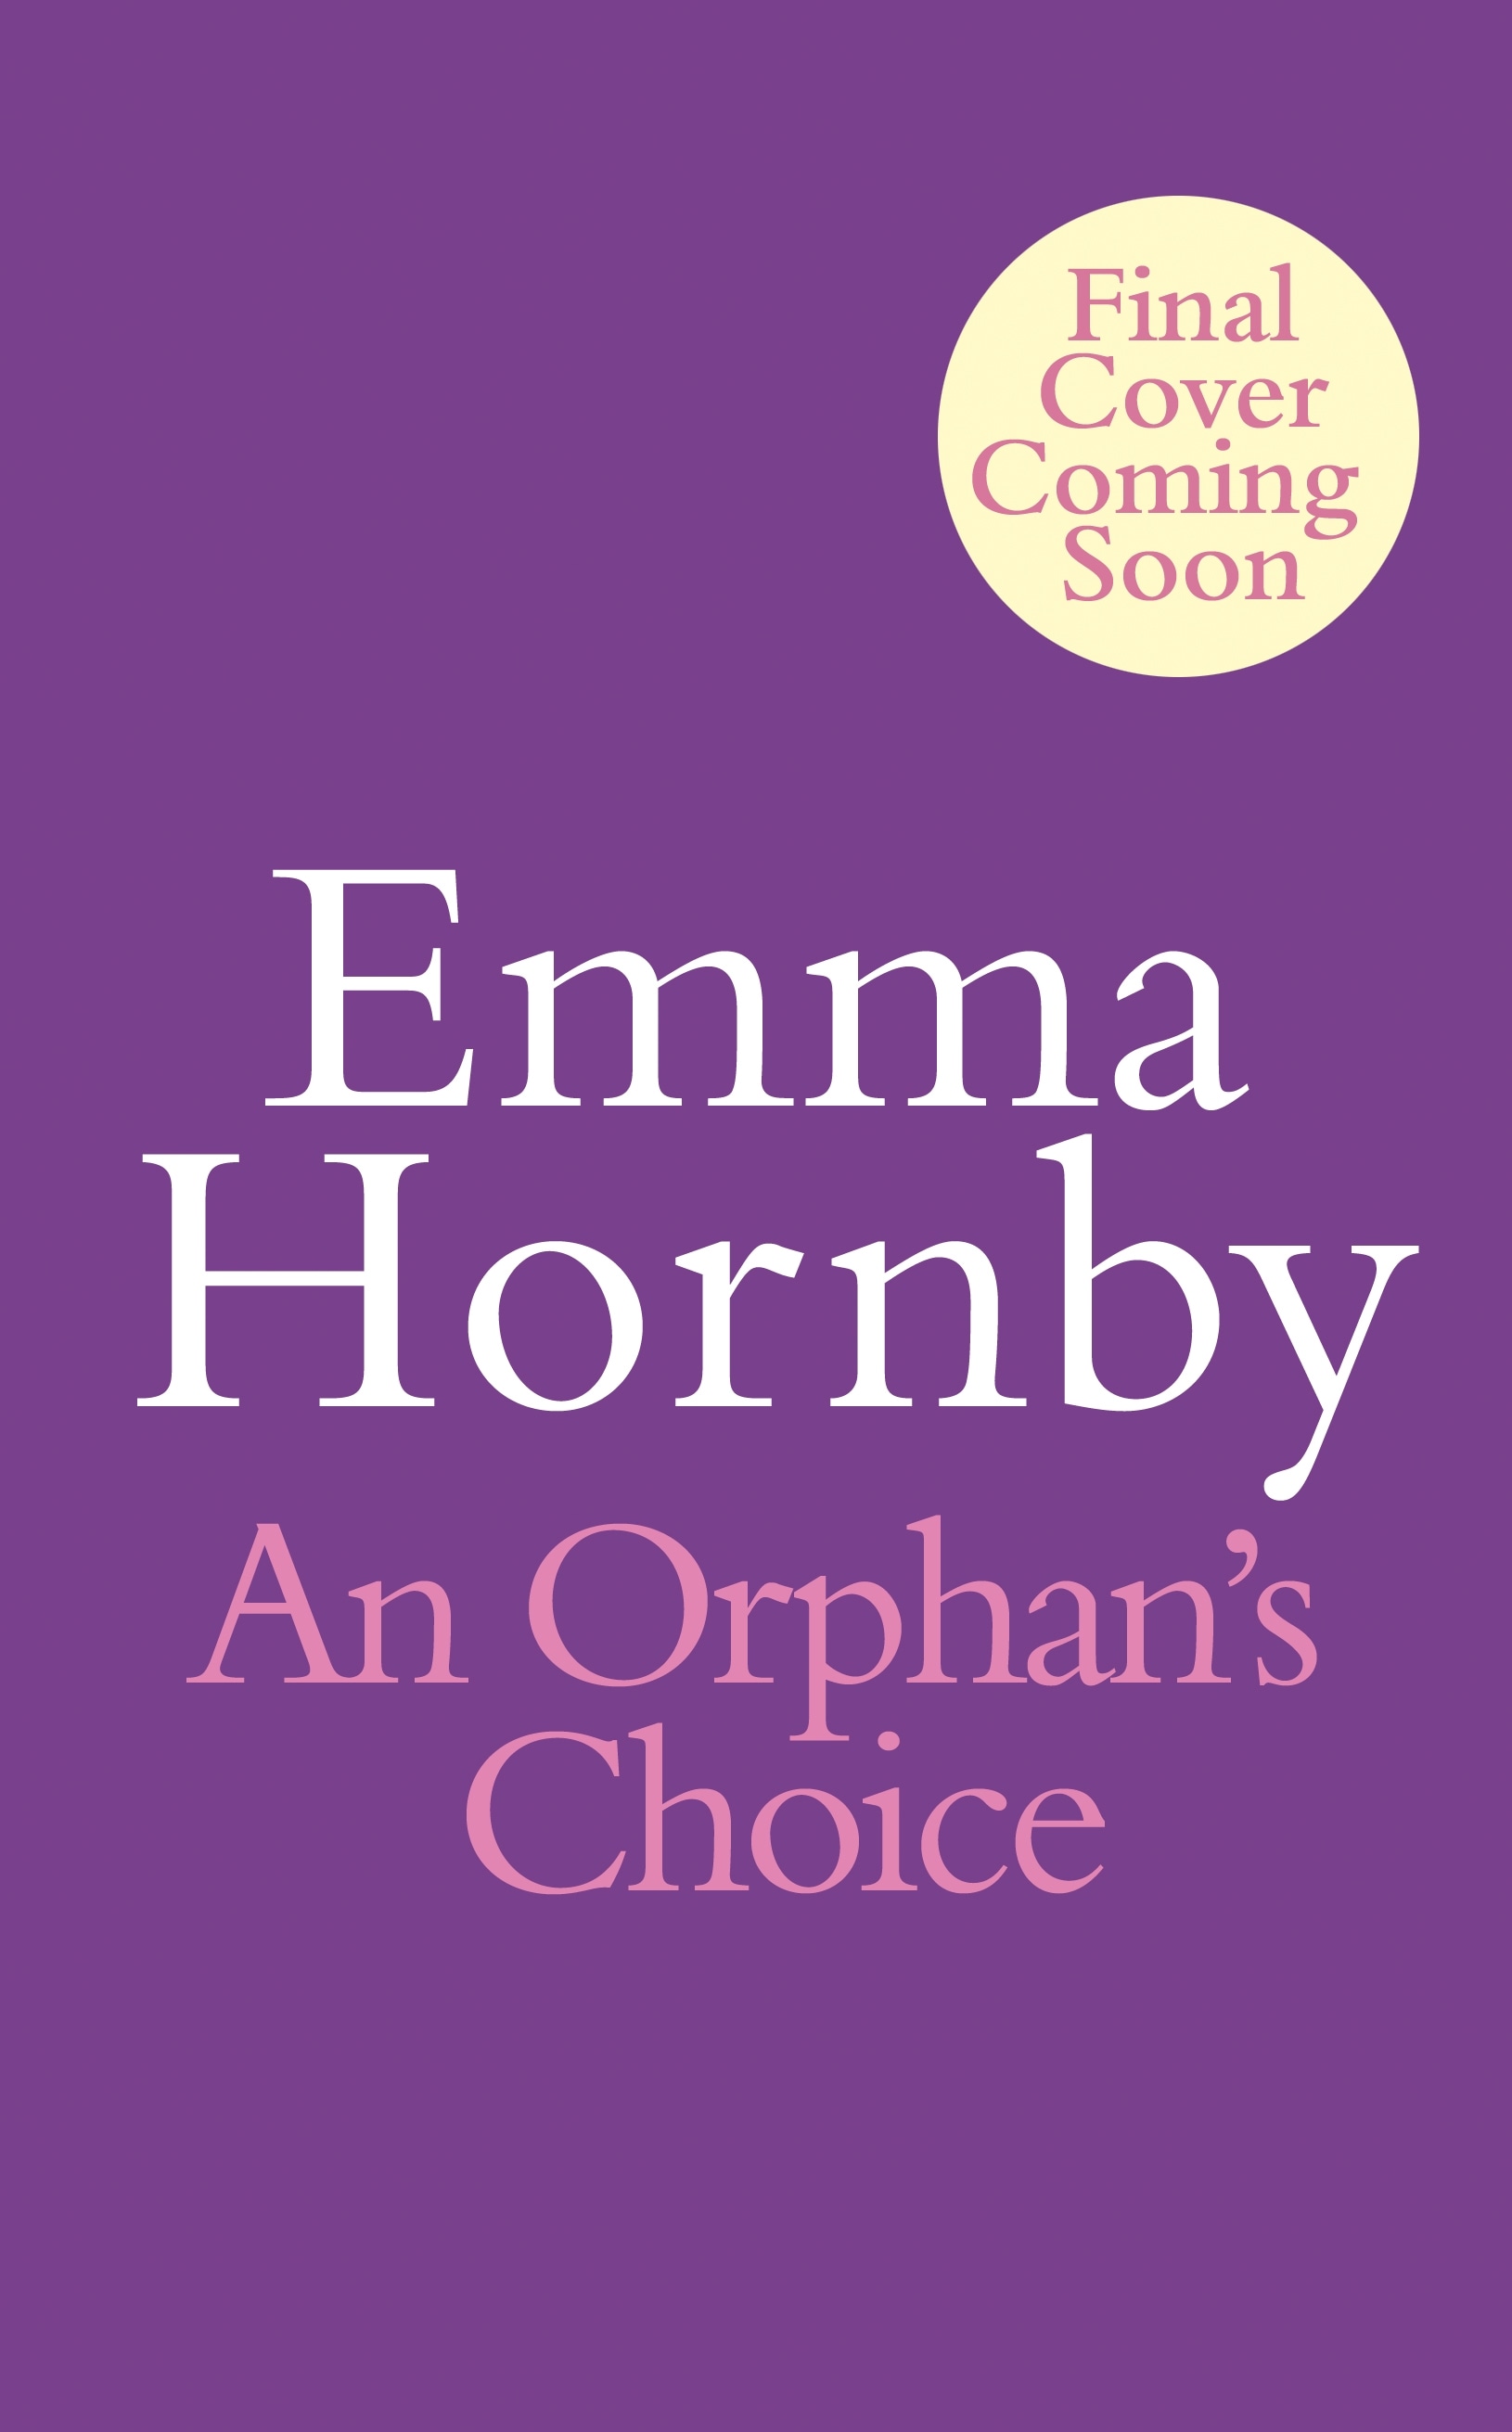 Book “An Orphan's Choice” by Emma Hornby — February 9, 2023